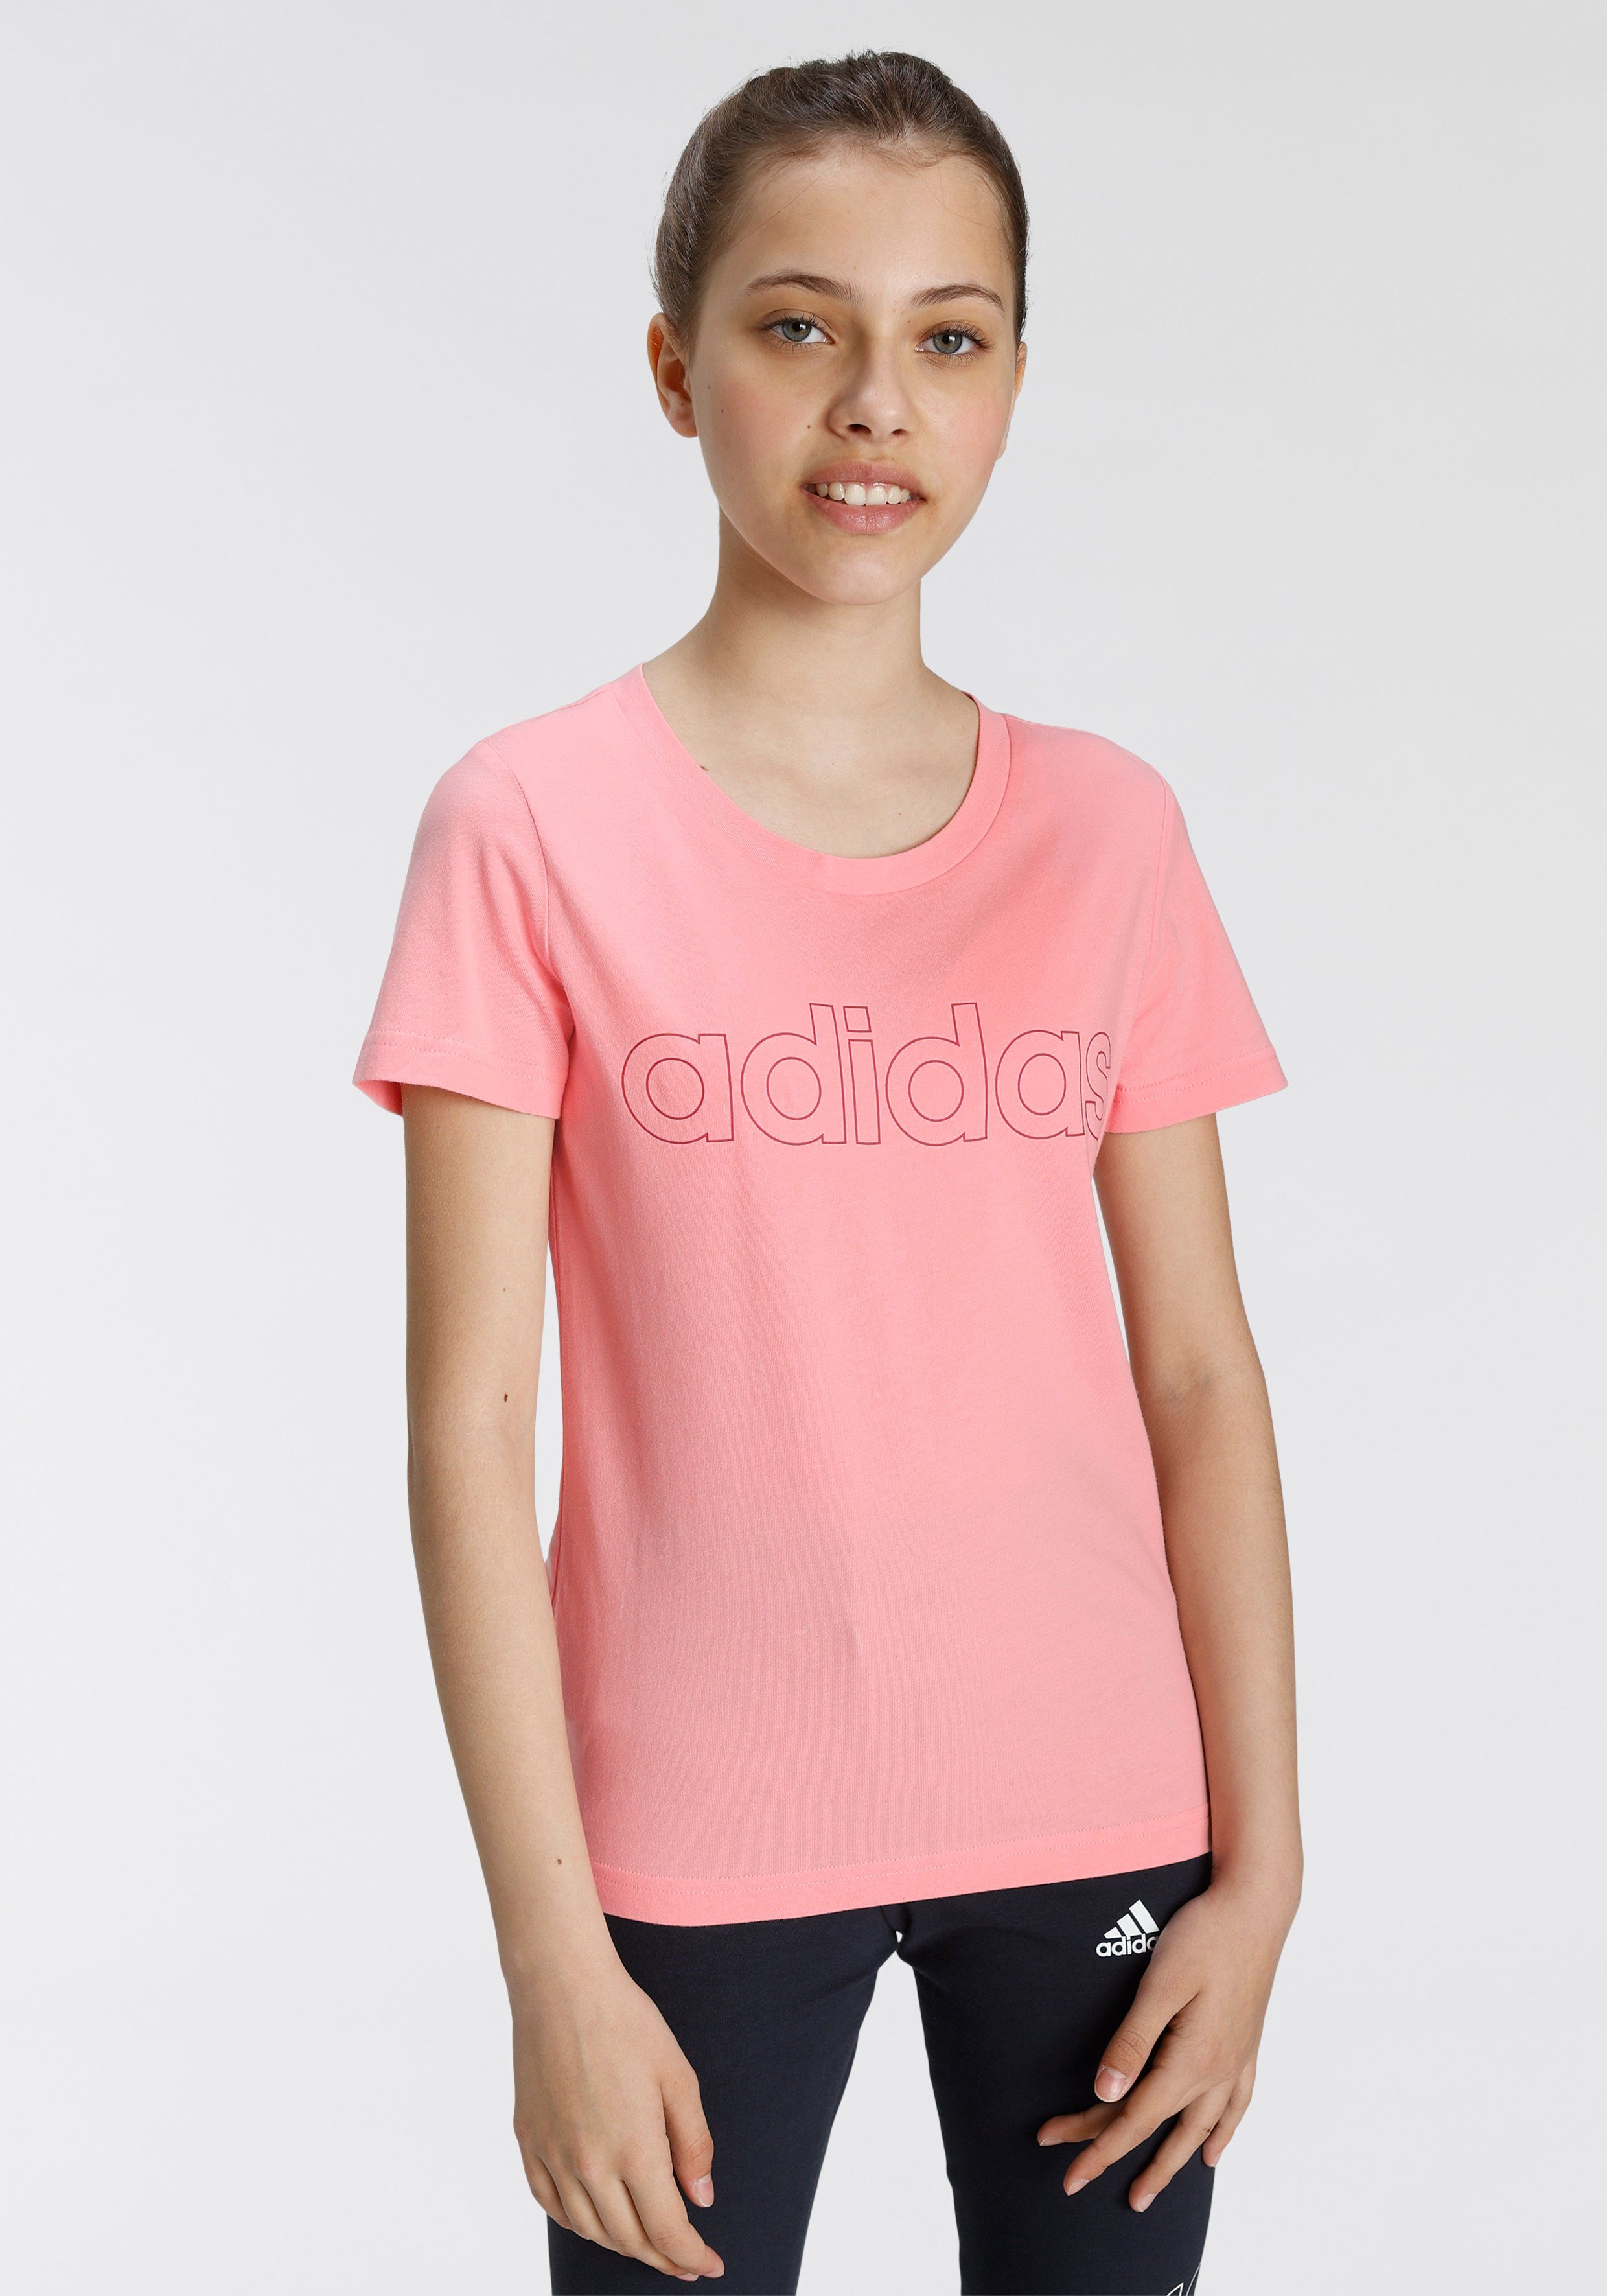 adidas Mädchen Sport T-Shirts online kaufen | OTTO